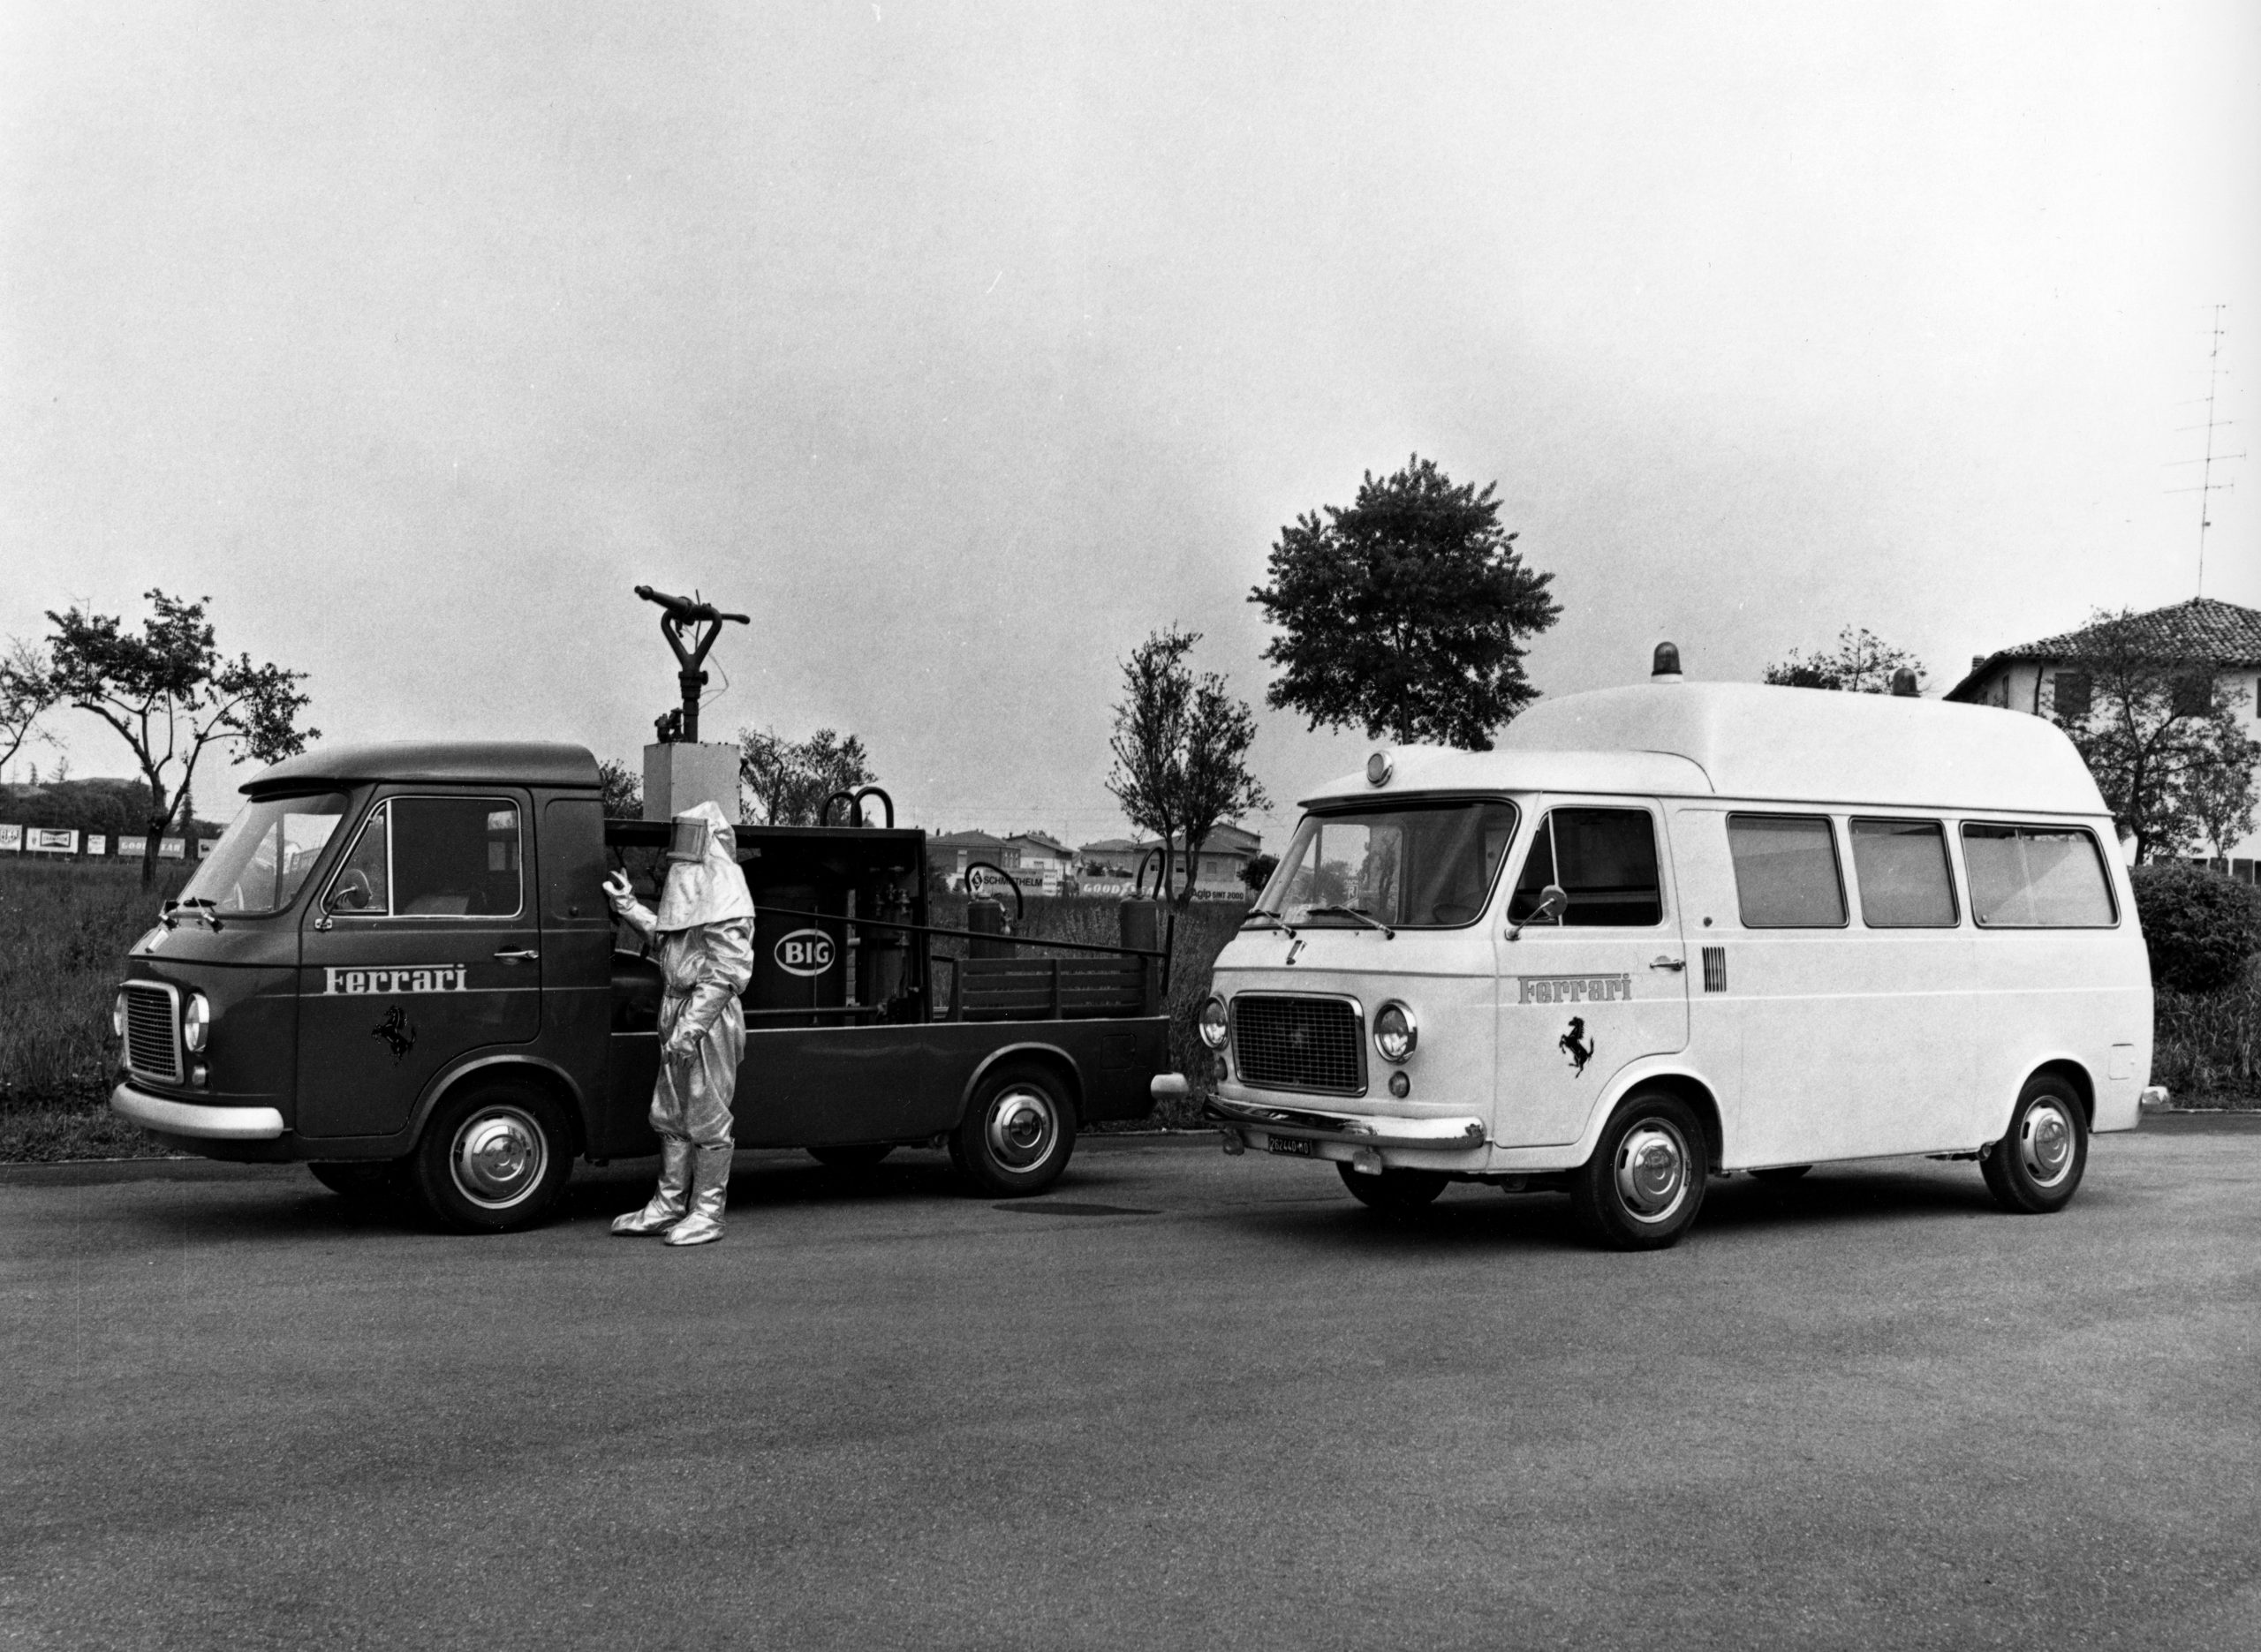 Fiorano circuit fire trucks in the 1970s